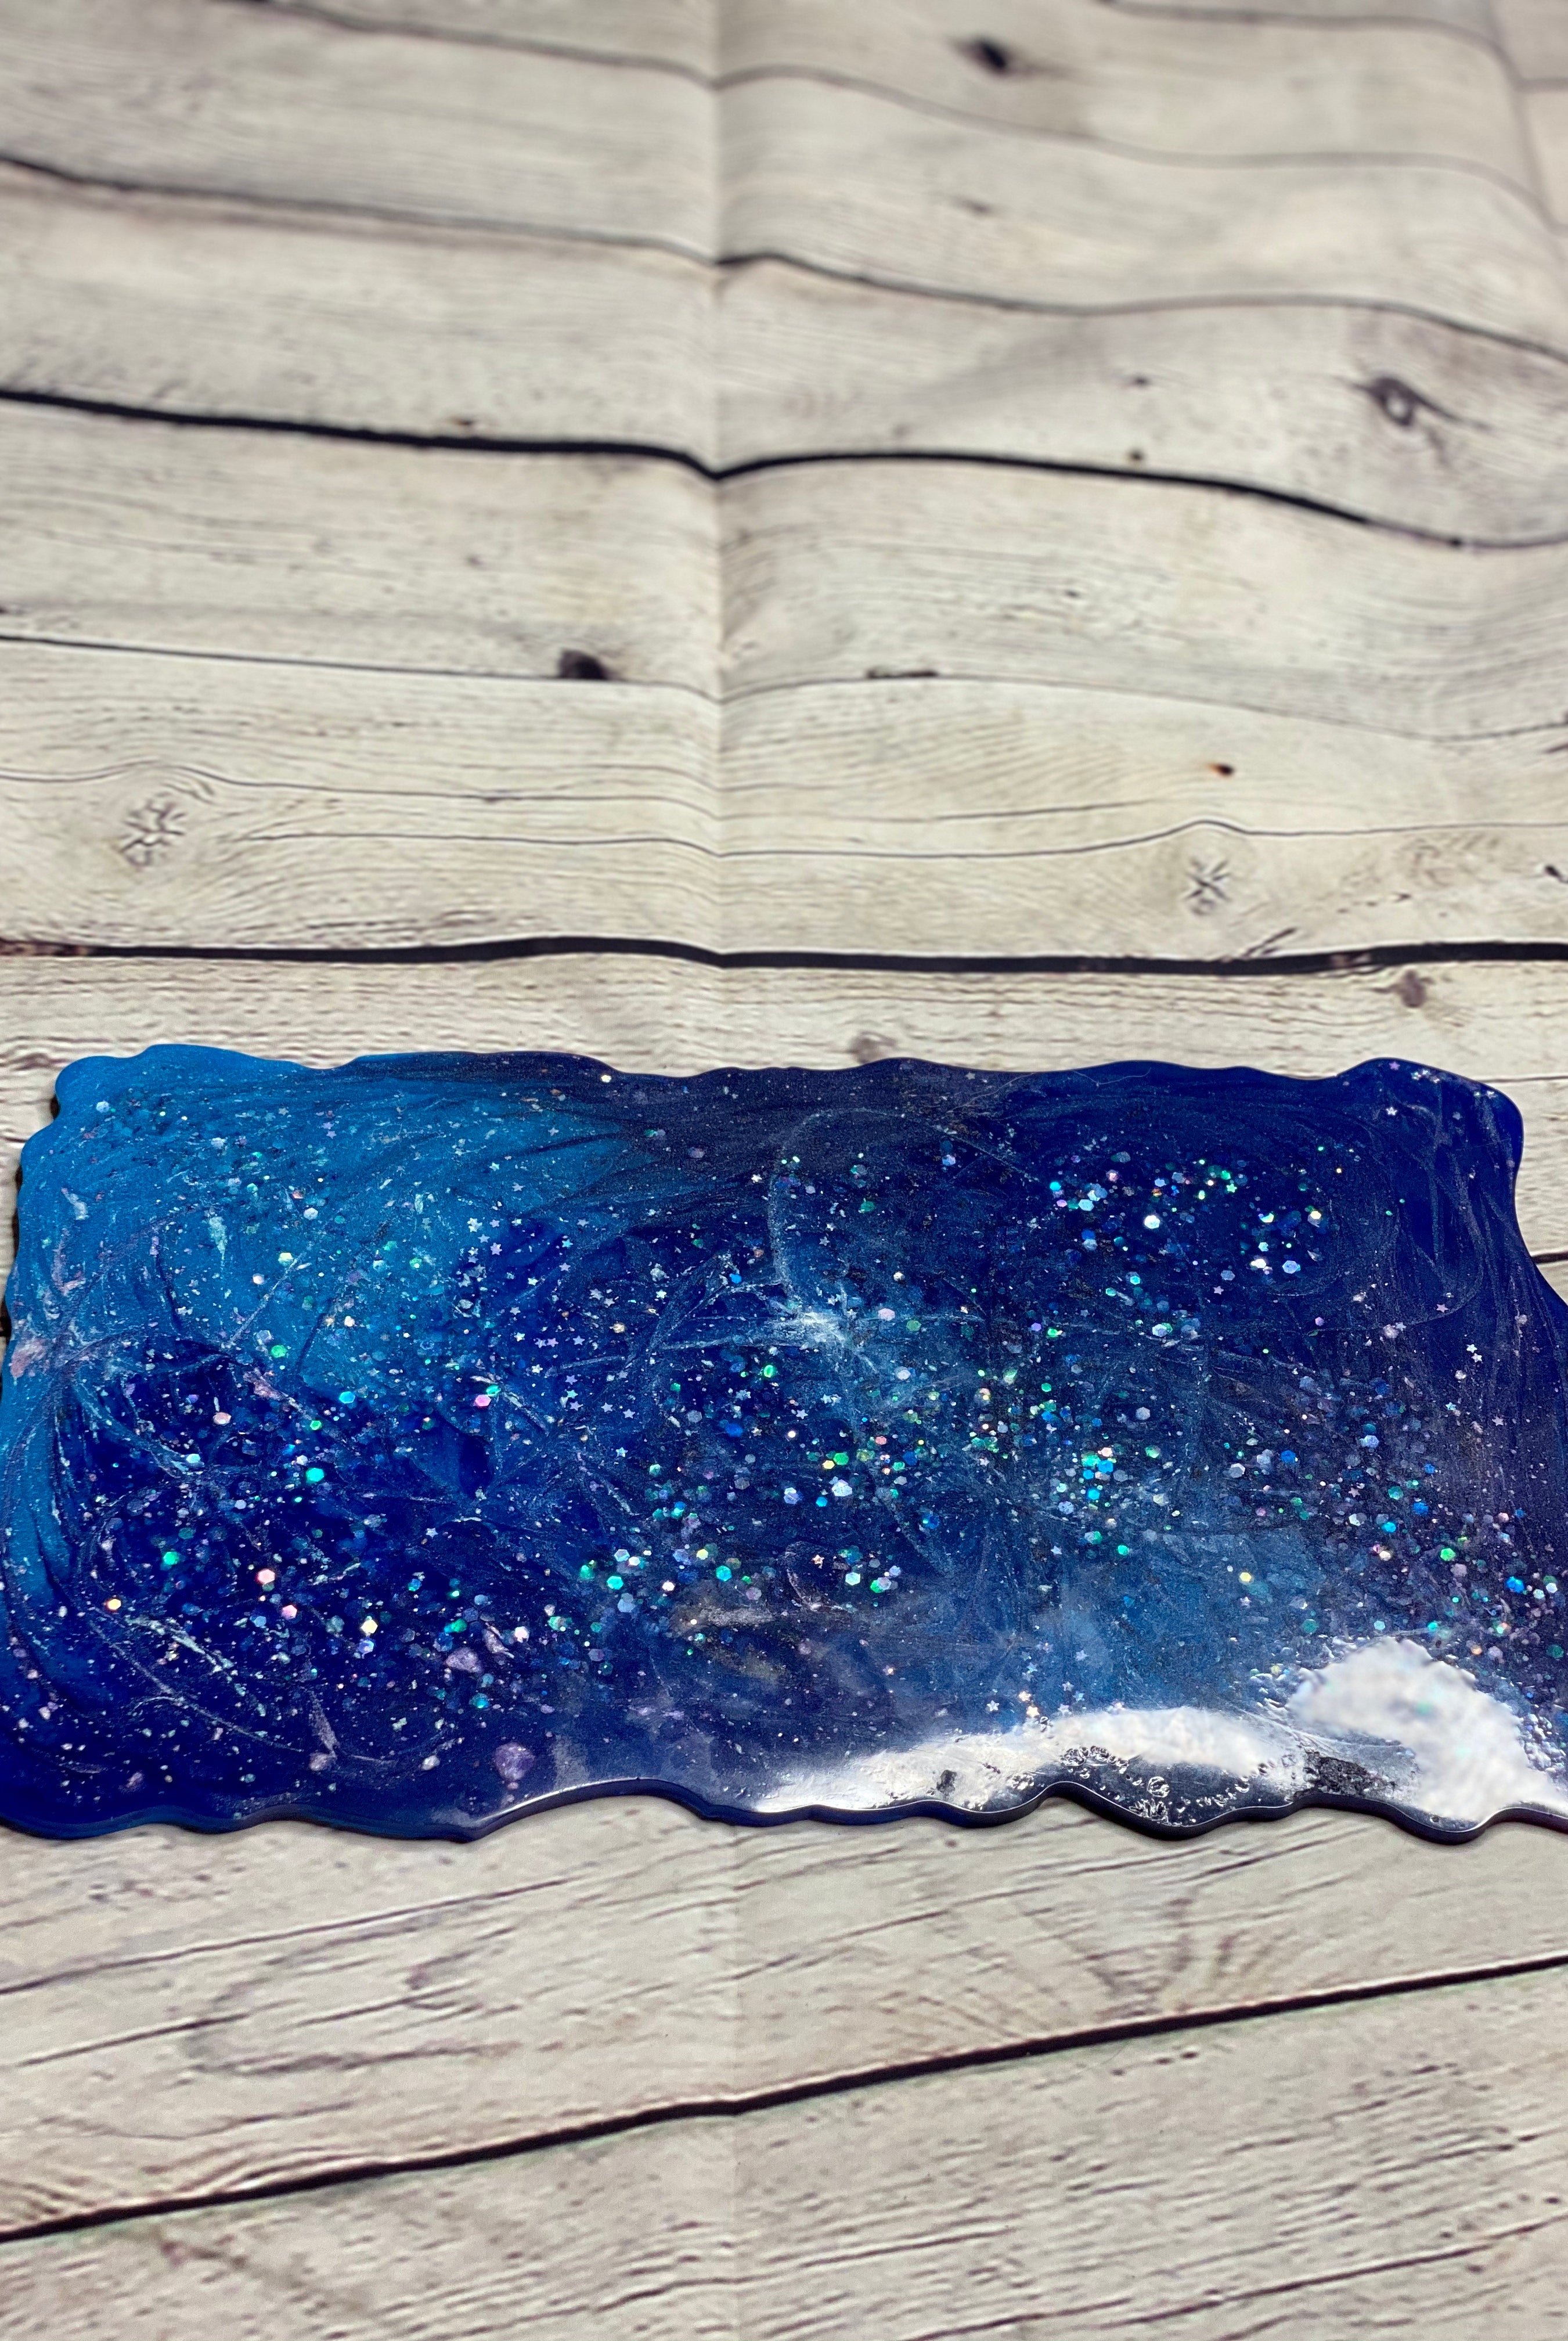 Midnight Blue Galaxy Vanity Tray Decorative Trays